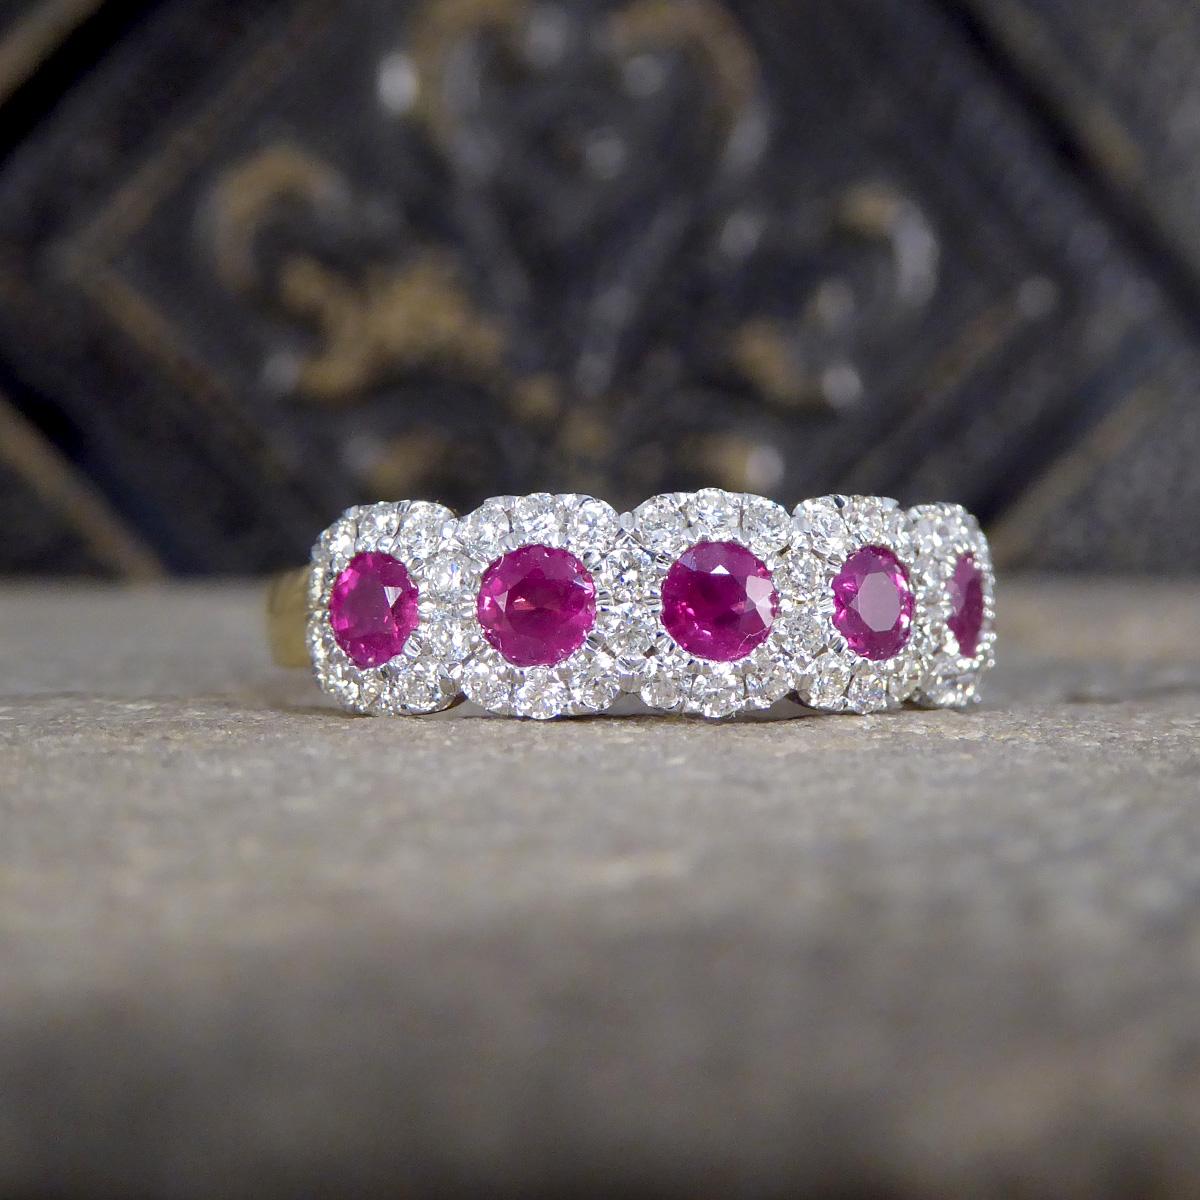 Ein außergewöhnlicher Ring, der Opulenz mit einem ausgeklügelten Design verbindet. Dieser mit unvergleichlicher Liebe zum Detail gefertigte Ring ist mit einem Sextupel aus leuchtenden Rubinen und funkelnden Diamanten besetzt, die in einer